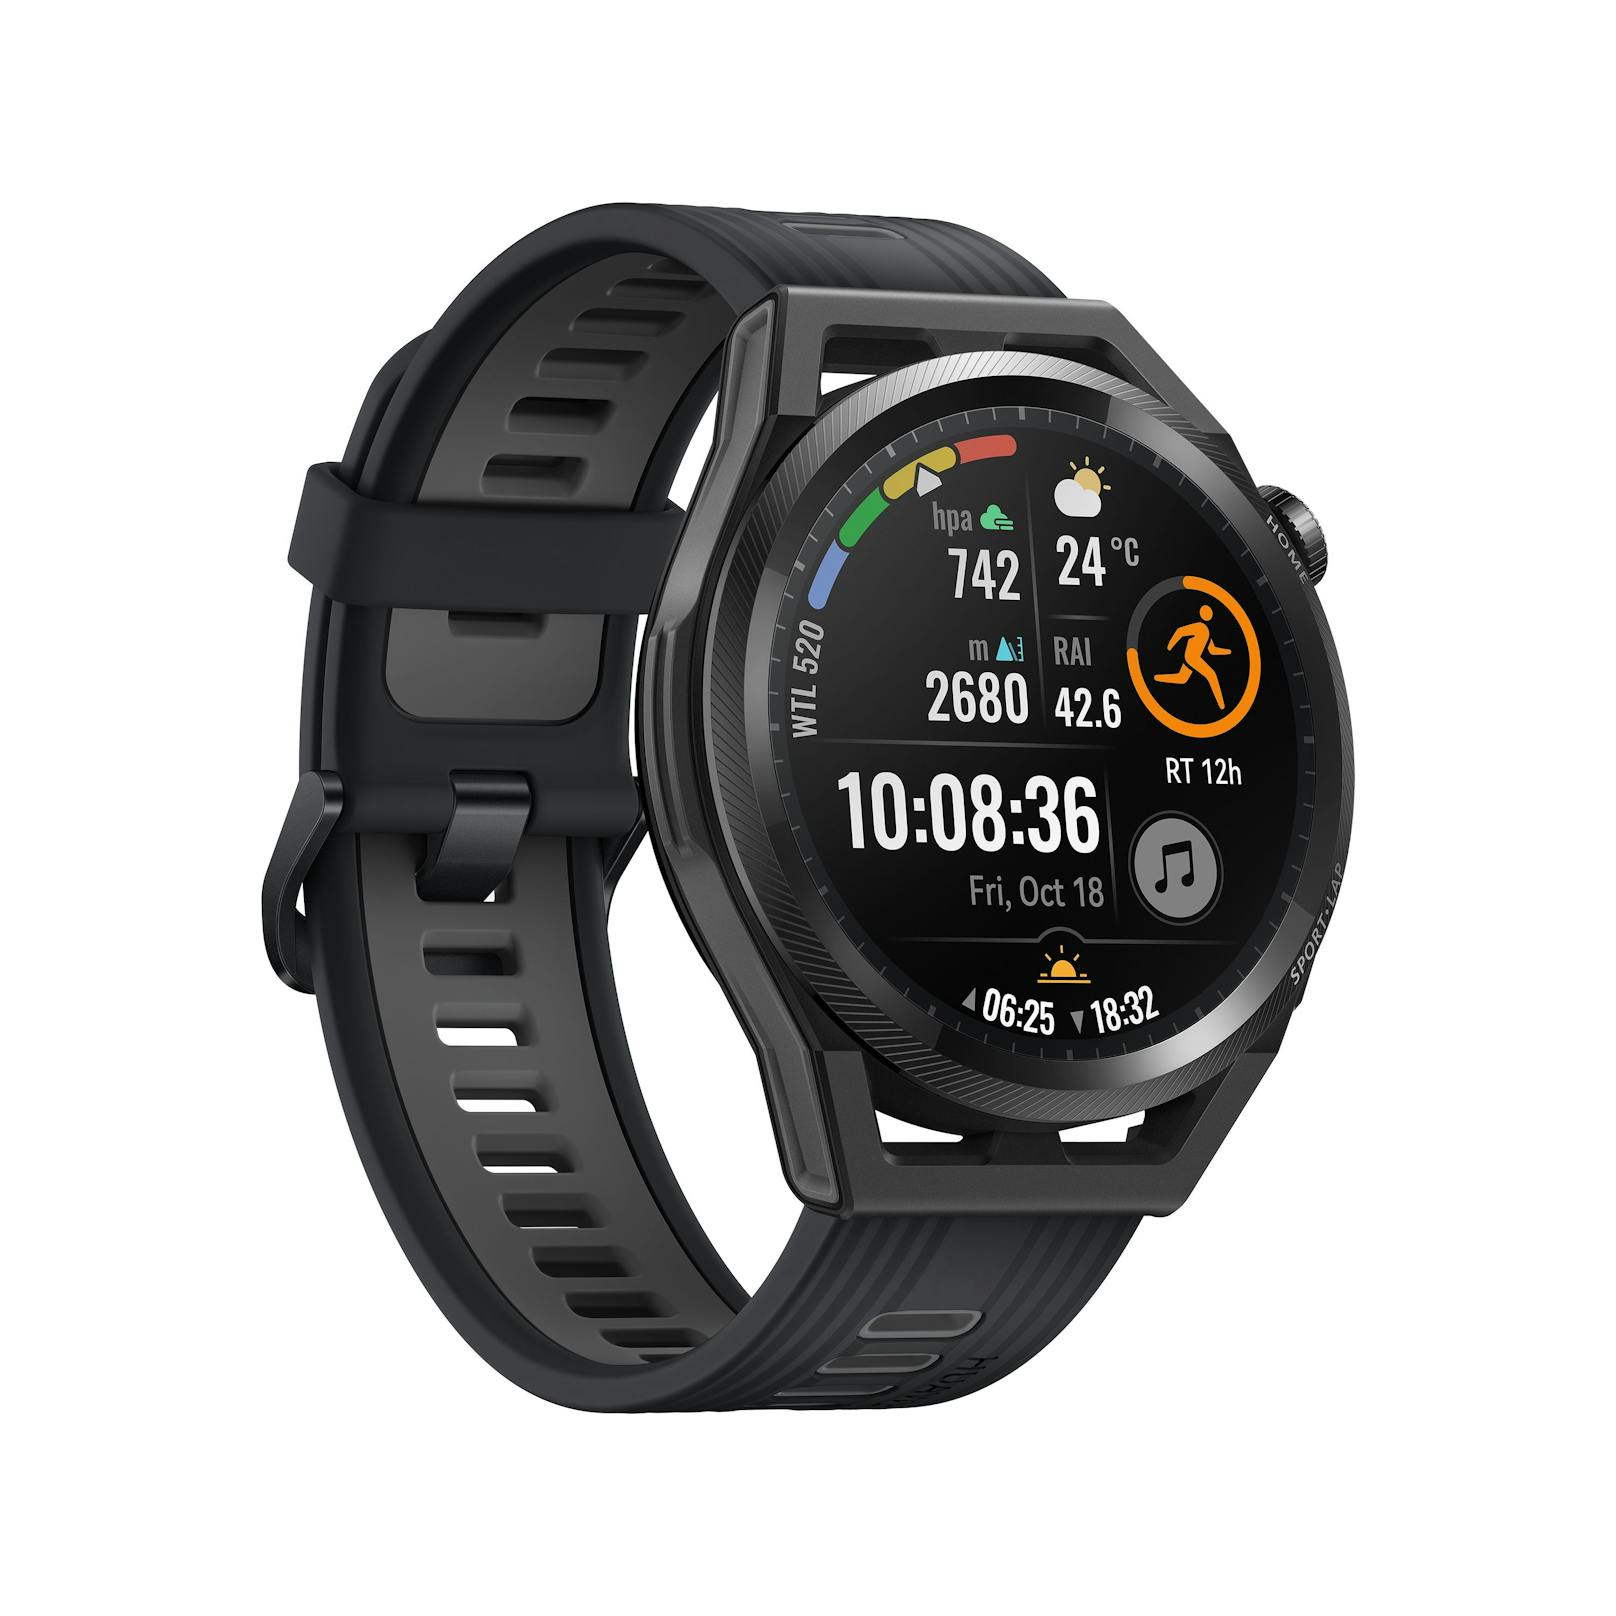 Als "erste professionelle Smartwatch speziell für Läufer:innen" bezeichnet das Unternehmen die Huawei Watch GT Runner.&nbsp;